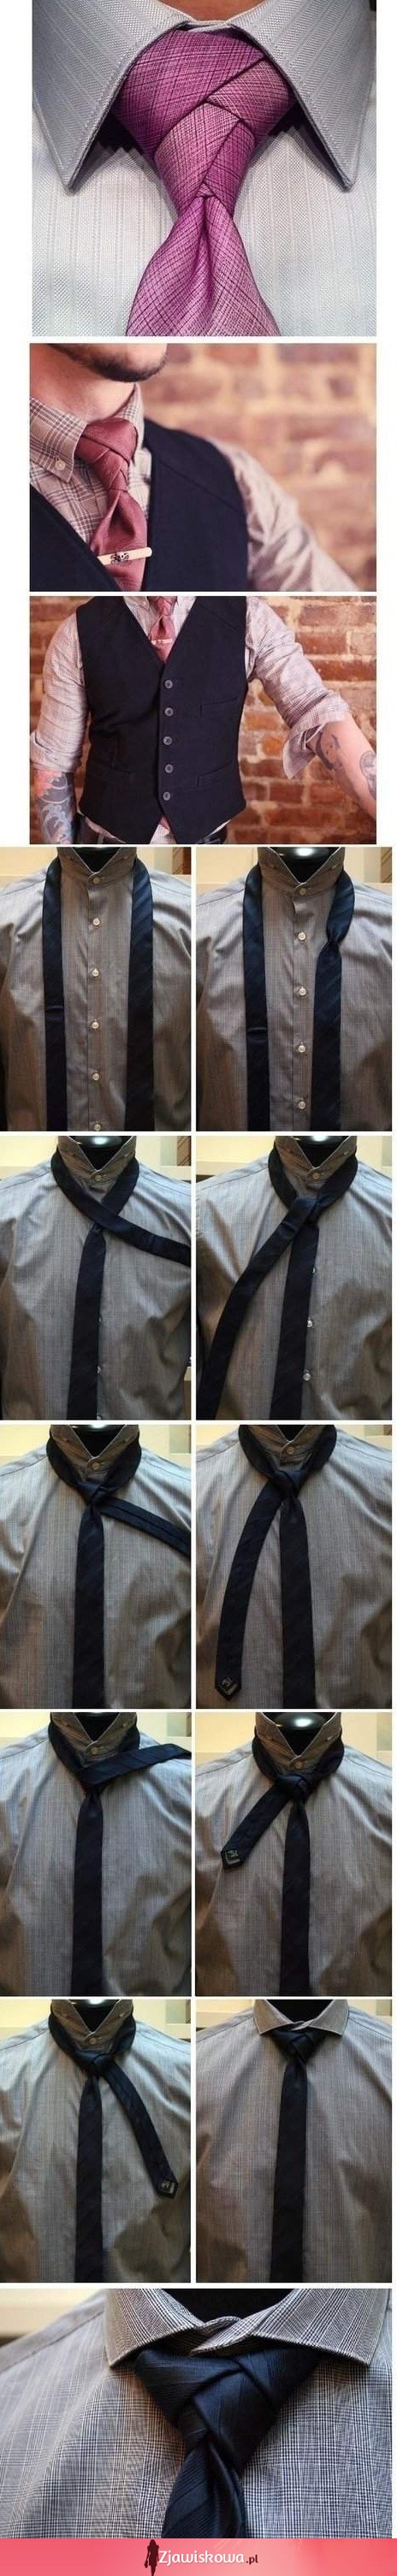 Jak zawiązać krawat w nietypowy sposób?